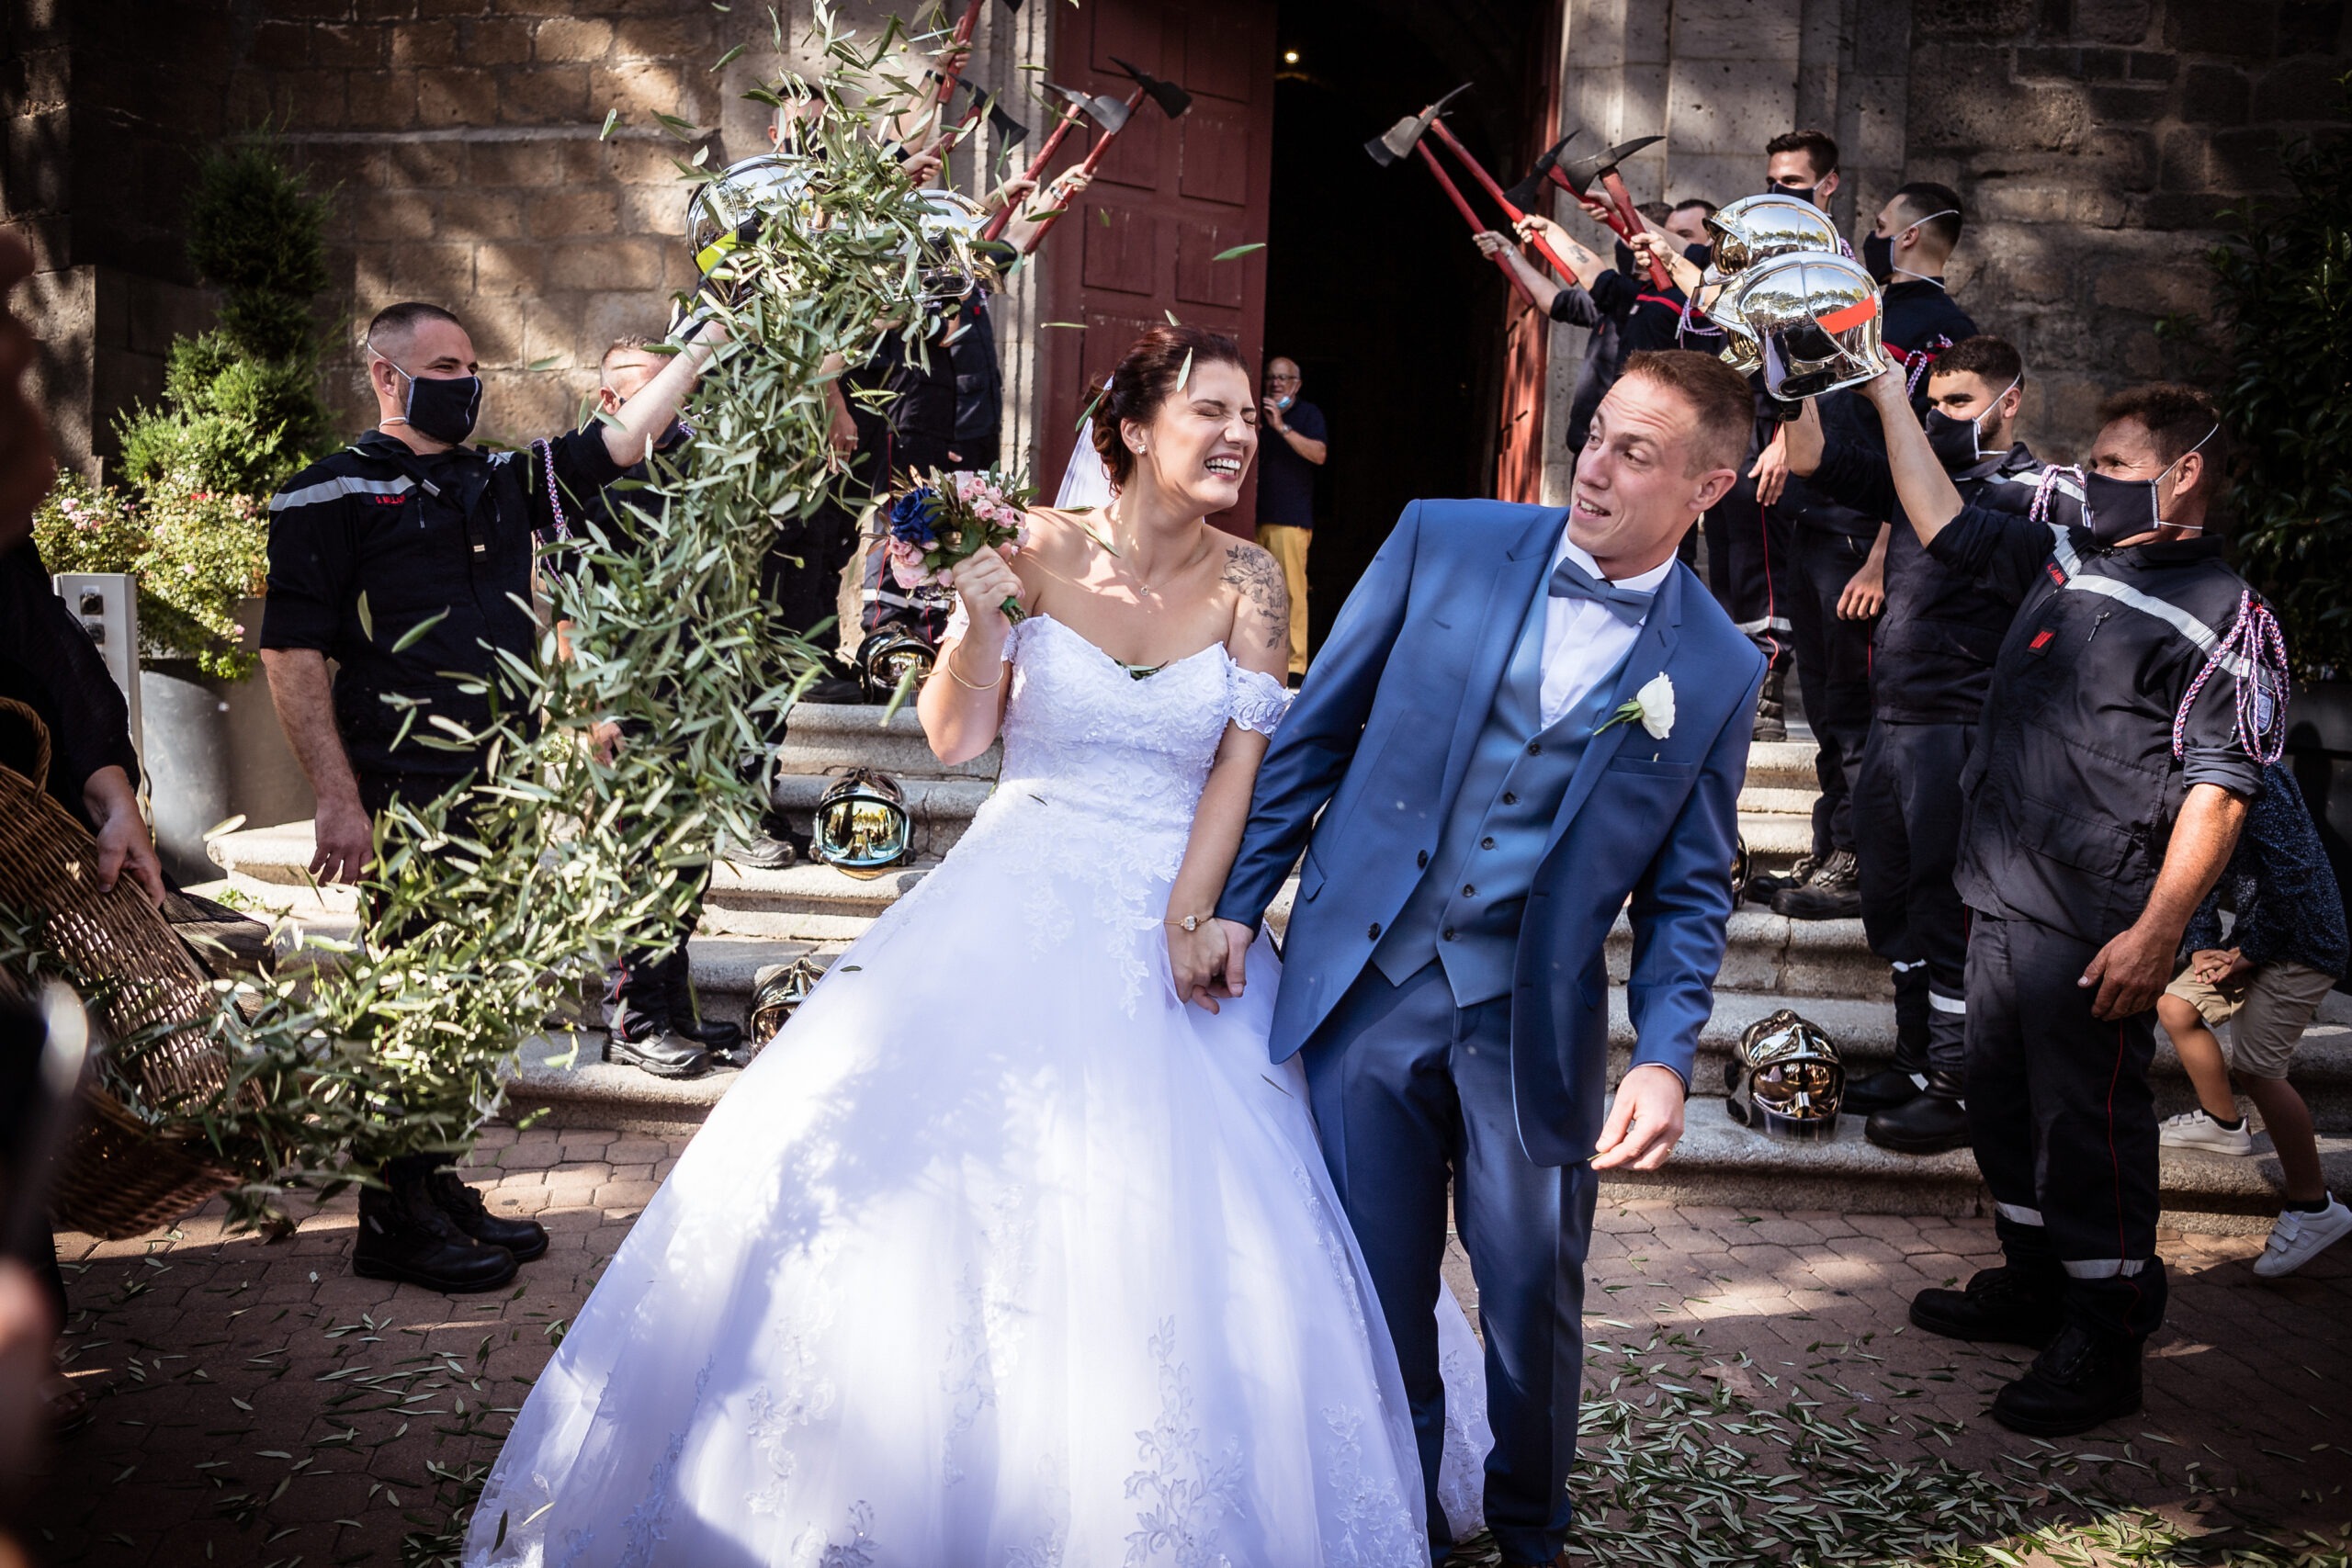 Cout d'un photographe. Sortie d'église des mariées avec une haie d'honneur des pompiers. Les mariées se prennent des feuilles d'olivier.